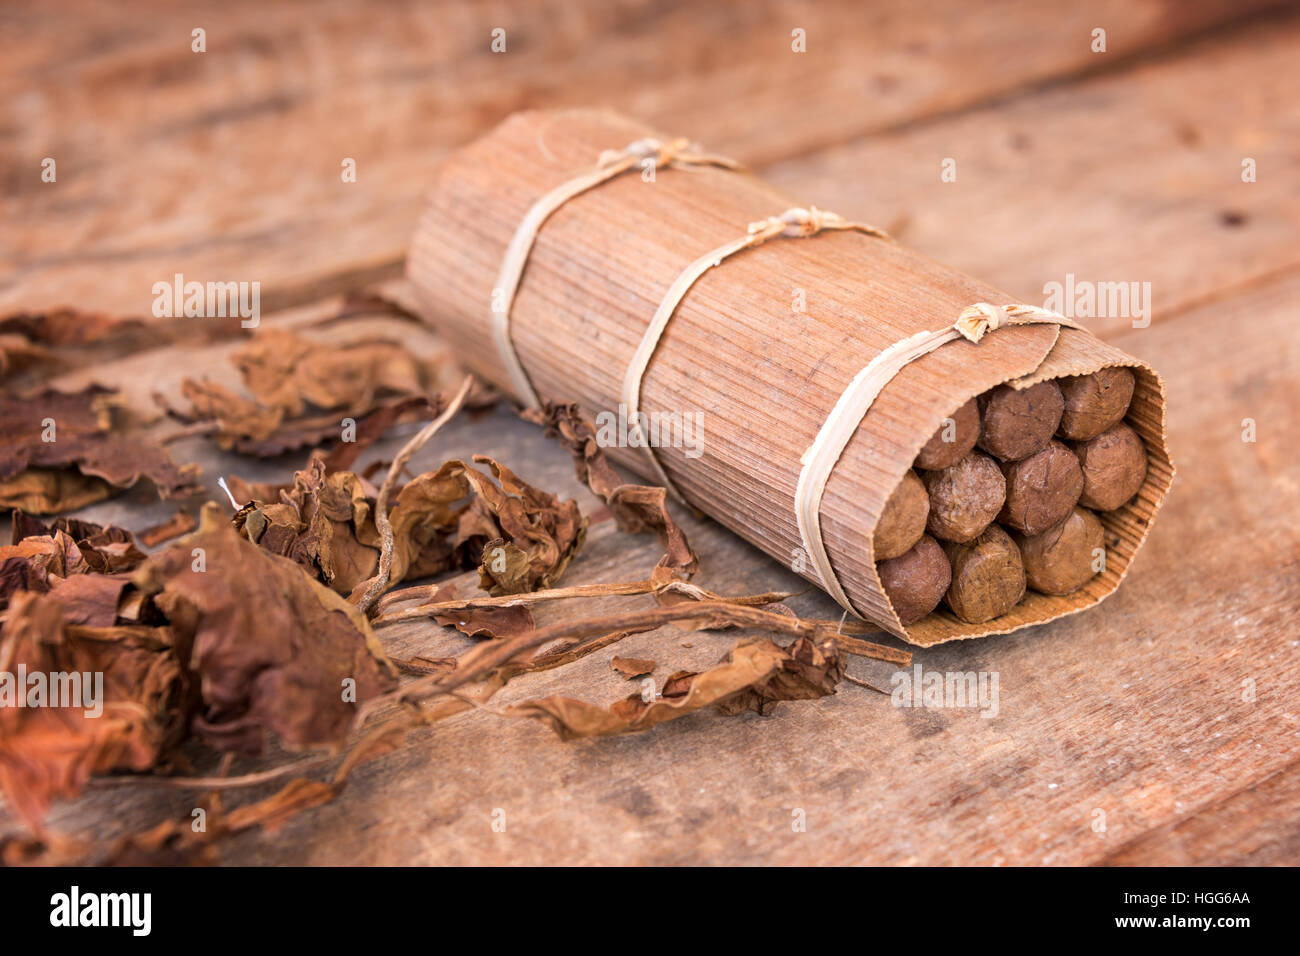 Gros plan d'une boîte de cigares faits main cubain, avec des feuilles de tabac séchées Banque D'Images